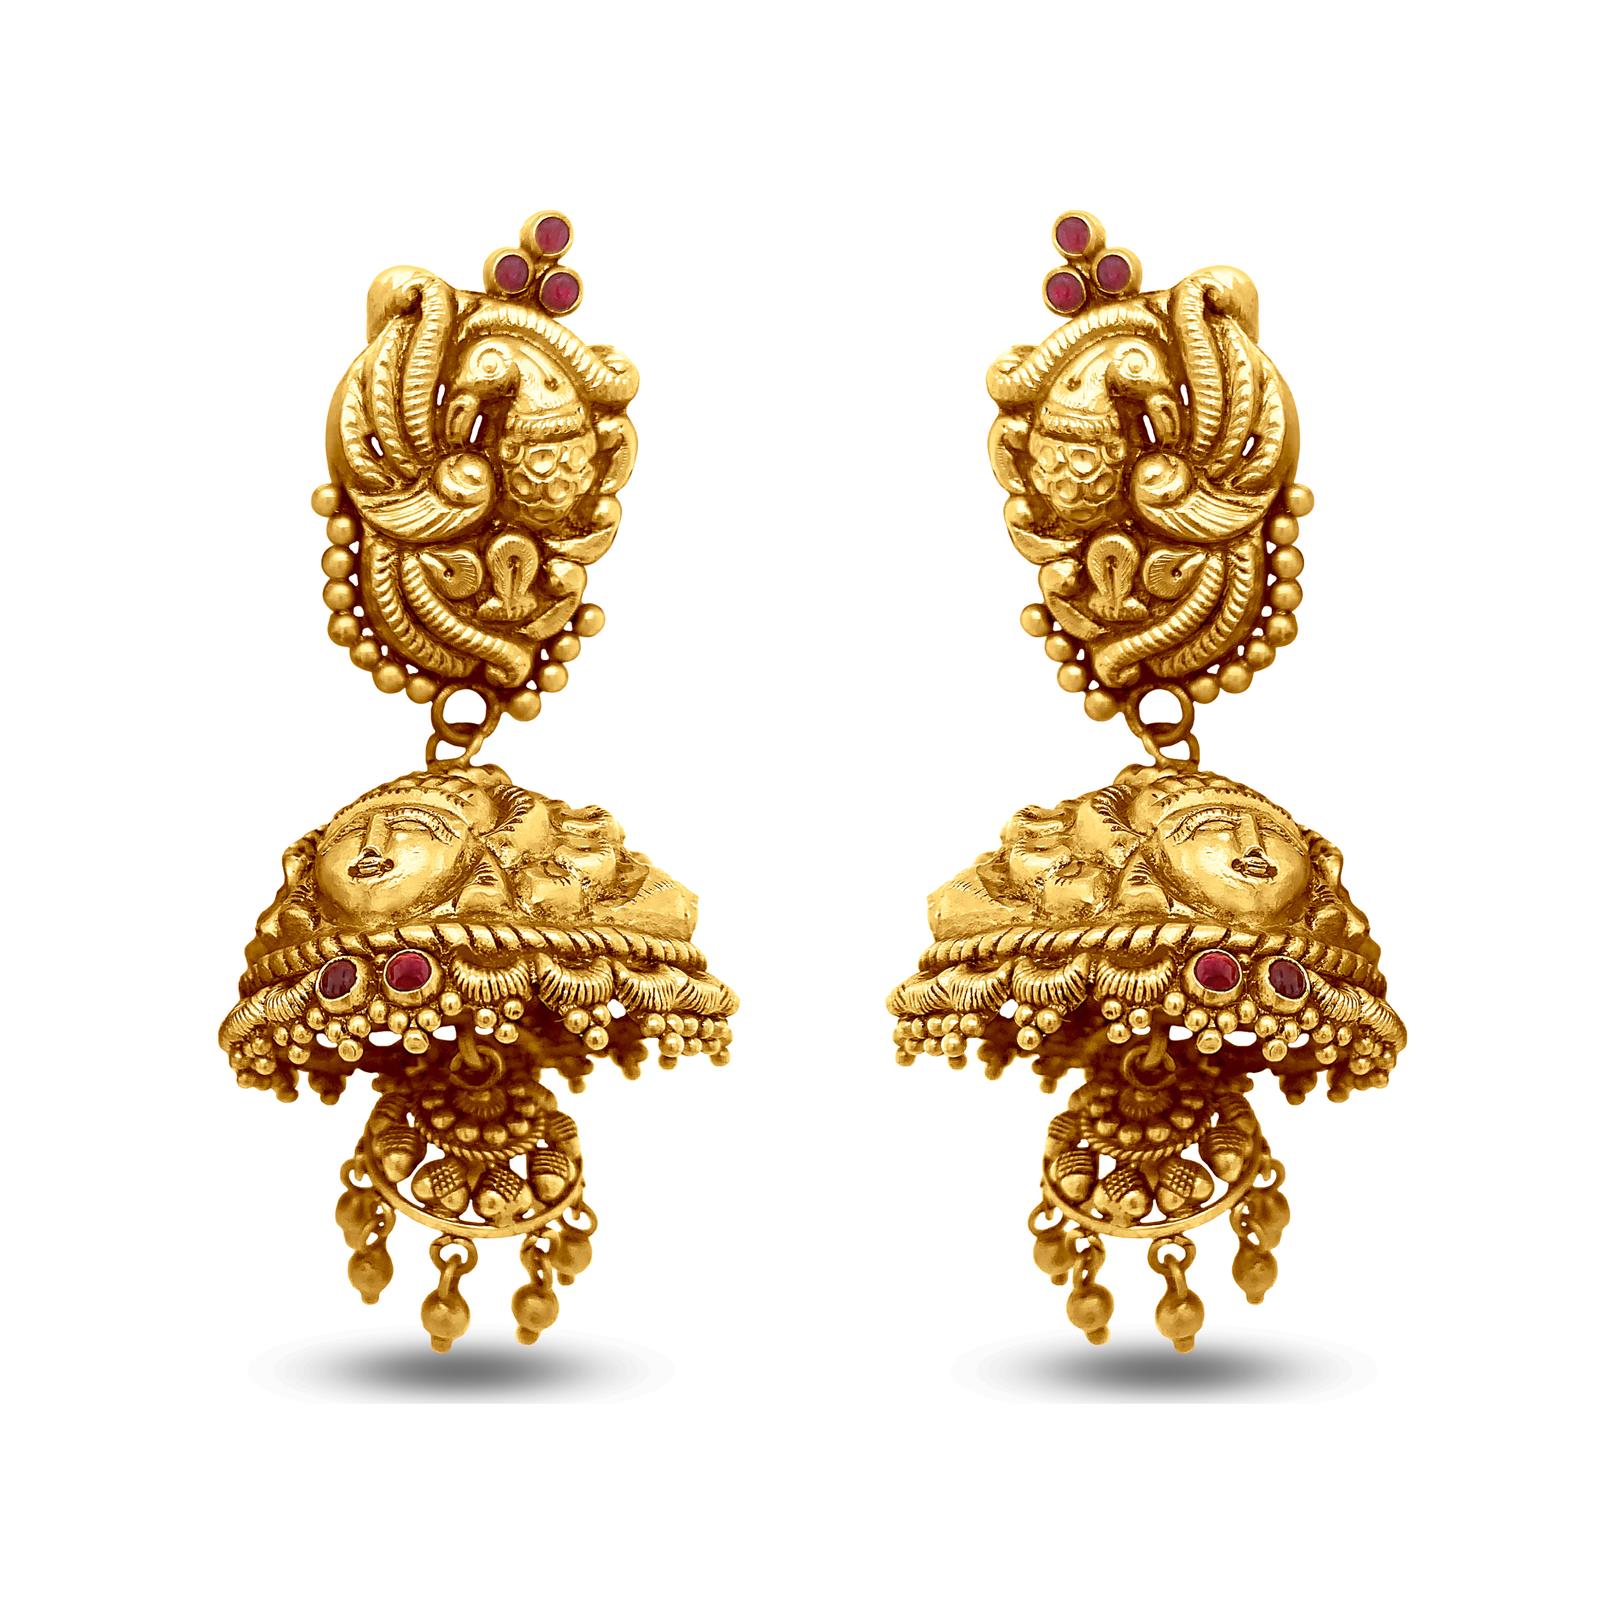 235-GJH2162 - Temple Jewellery- 22K Gold 'Ram Parivar' Jhumkas(Buttalu) -  Gold Dangle Earrings with Cz,Ruby,Emerald & Pearls | Temple jewellery  earrings, Temple jewellery, Gold earrings dangle